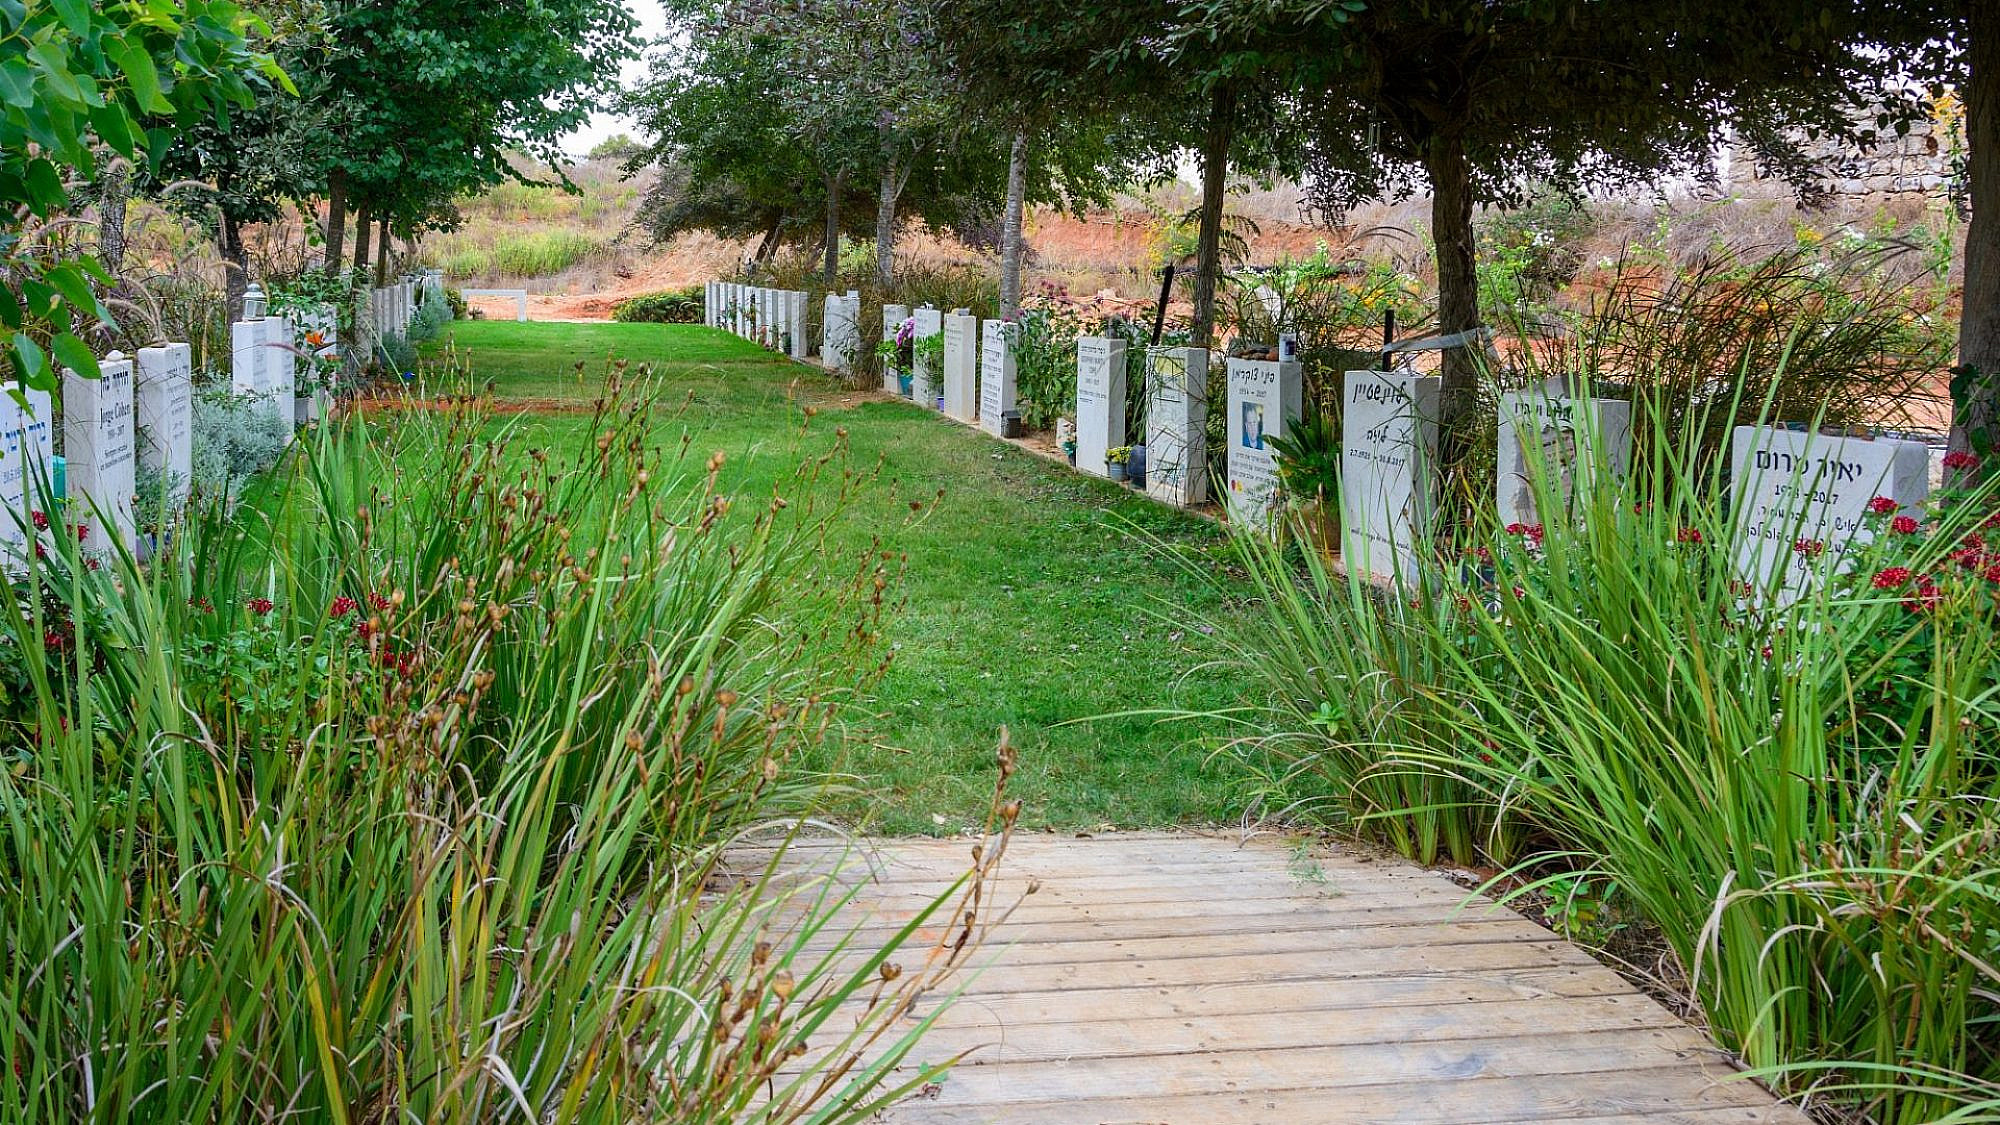 מה, גם לחילונים יש זכויות? בית קברות אזרחי בישראל (צילום: שאטרסטוק)